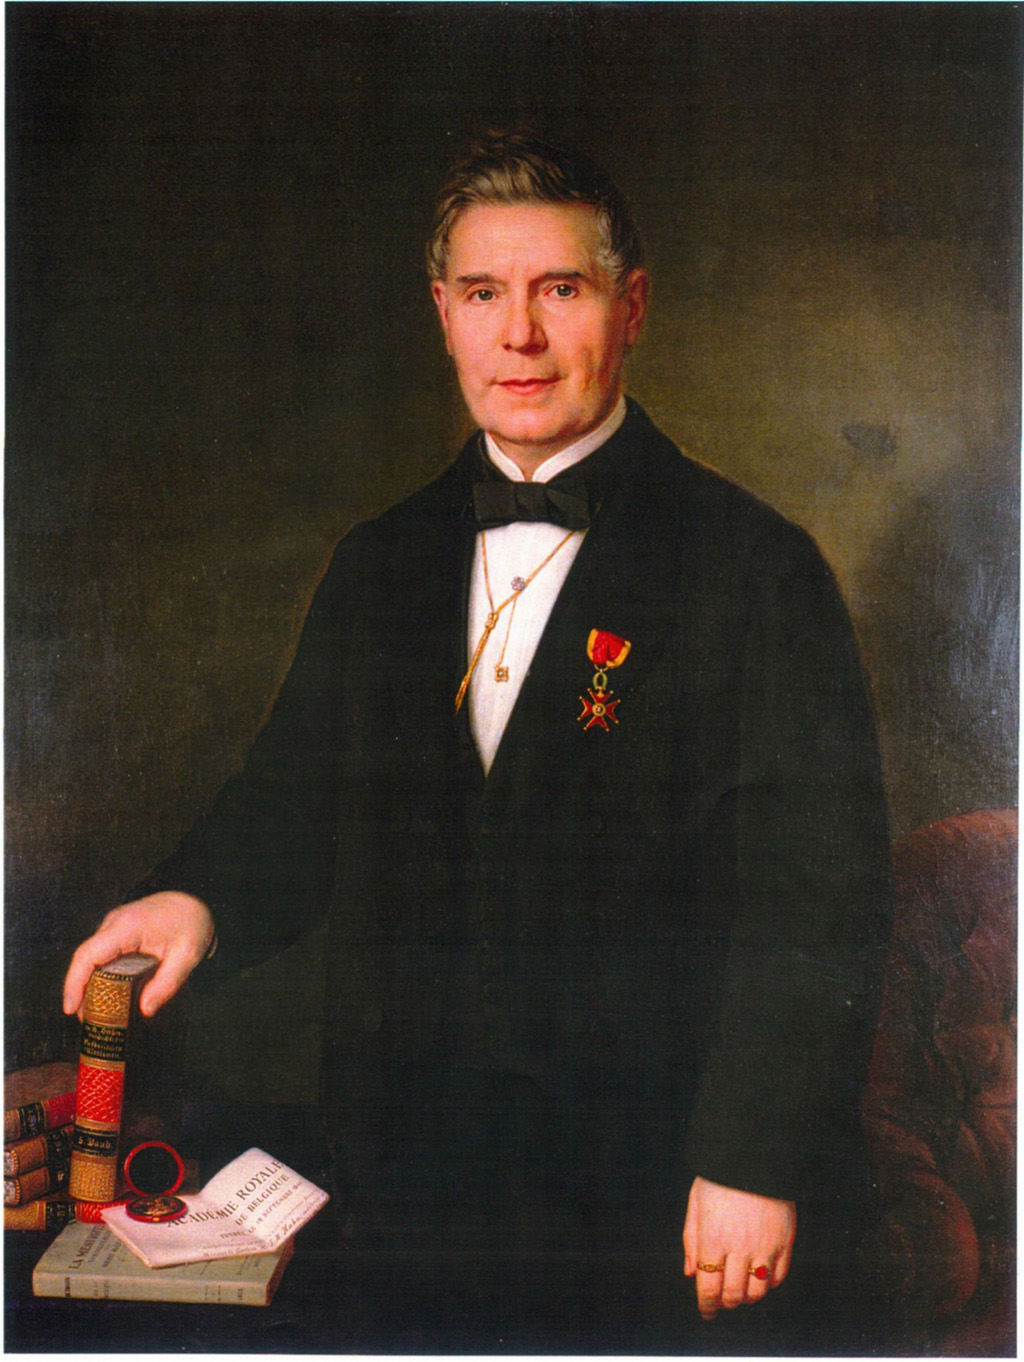 Dr. Heinrich Hahn